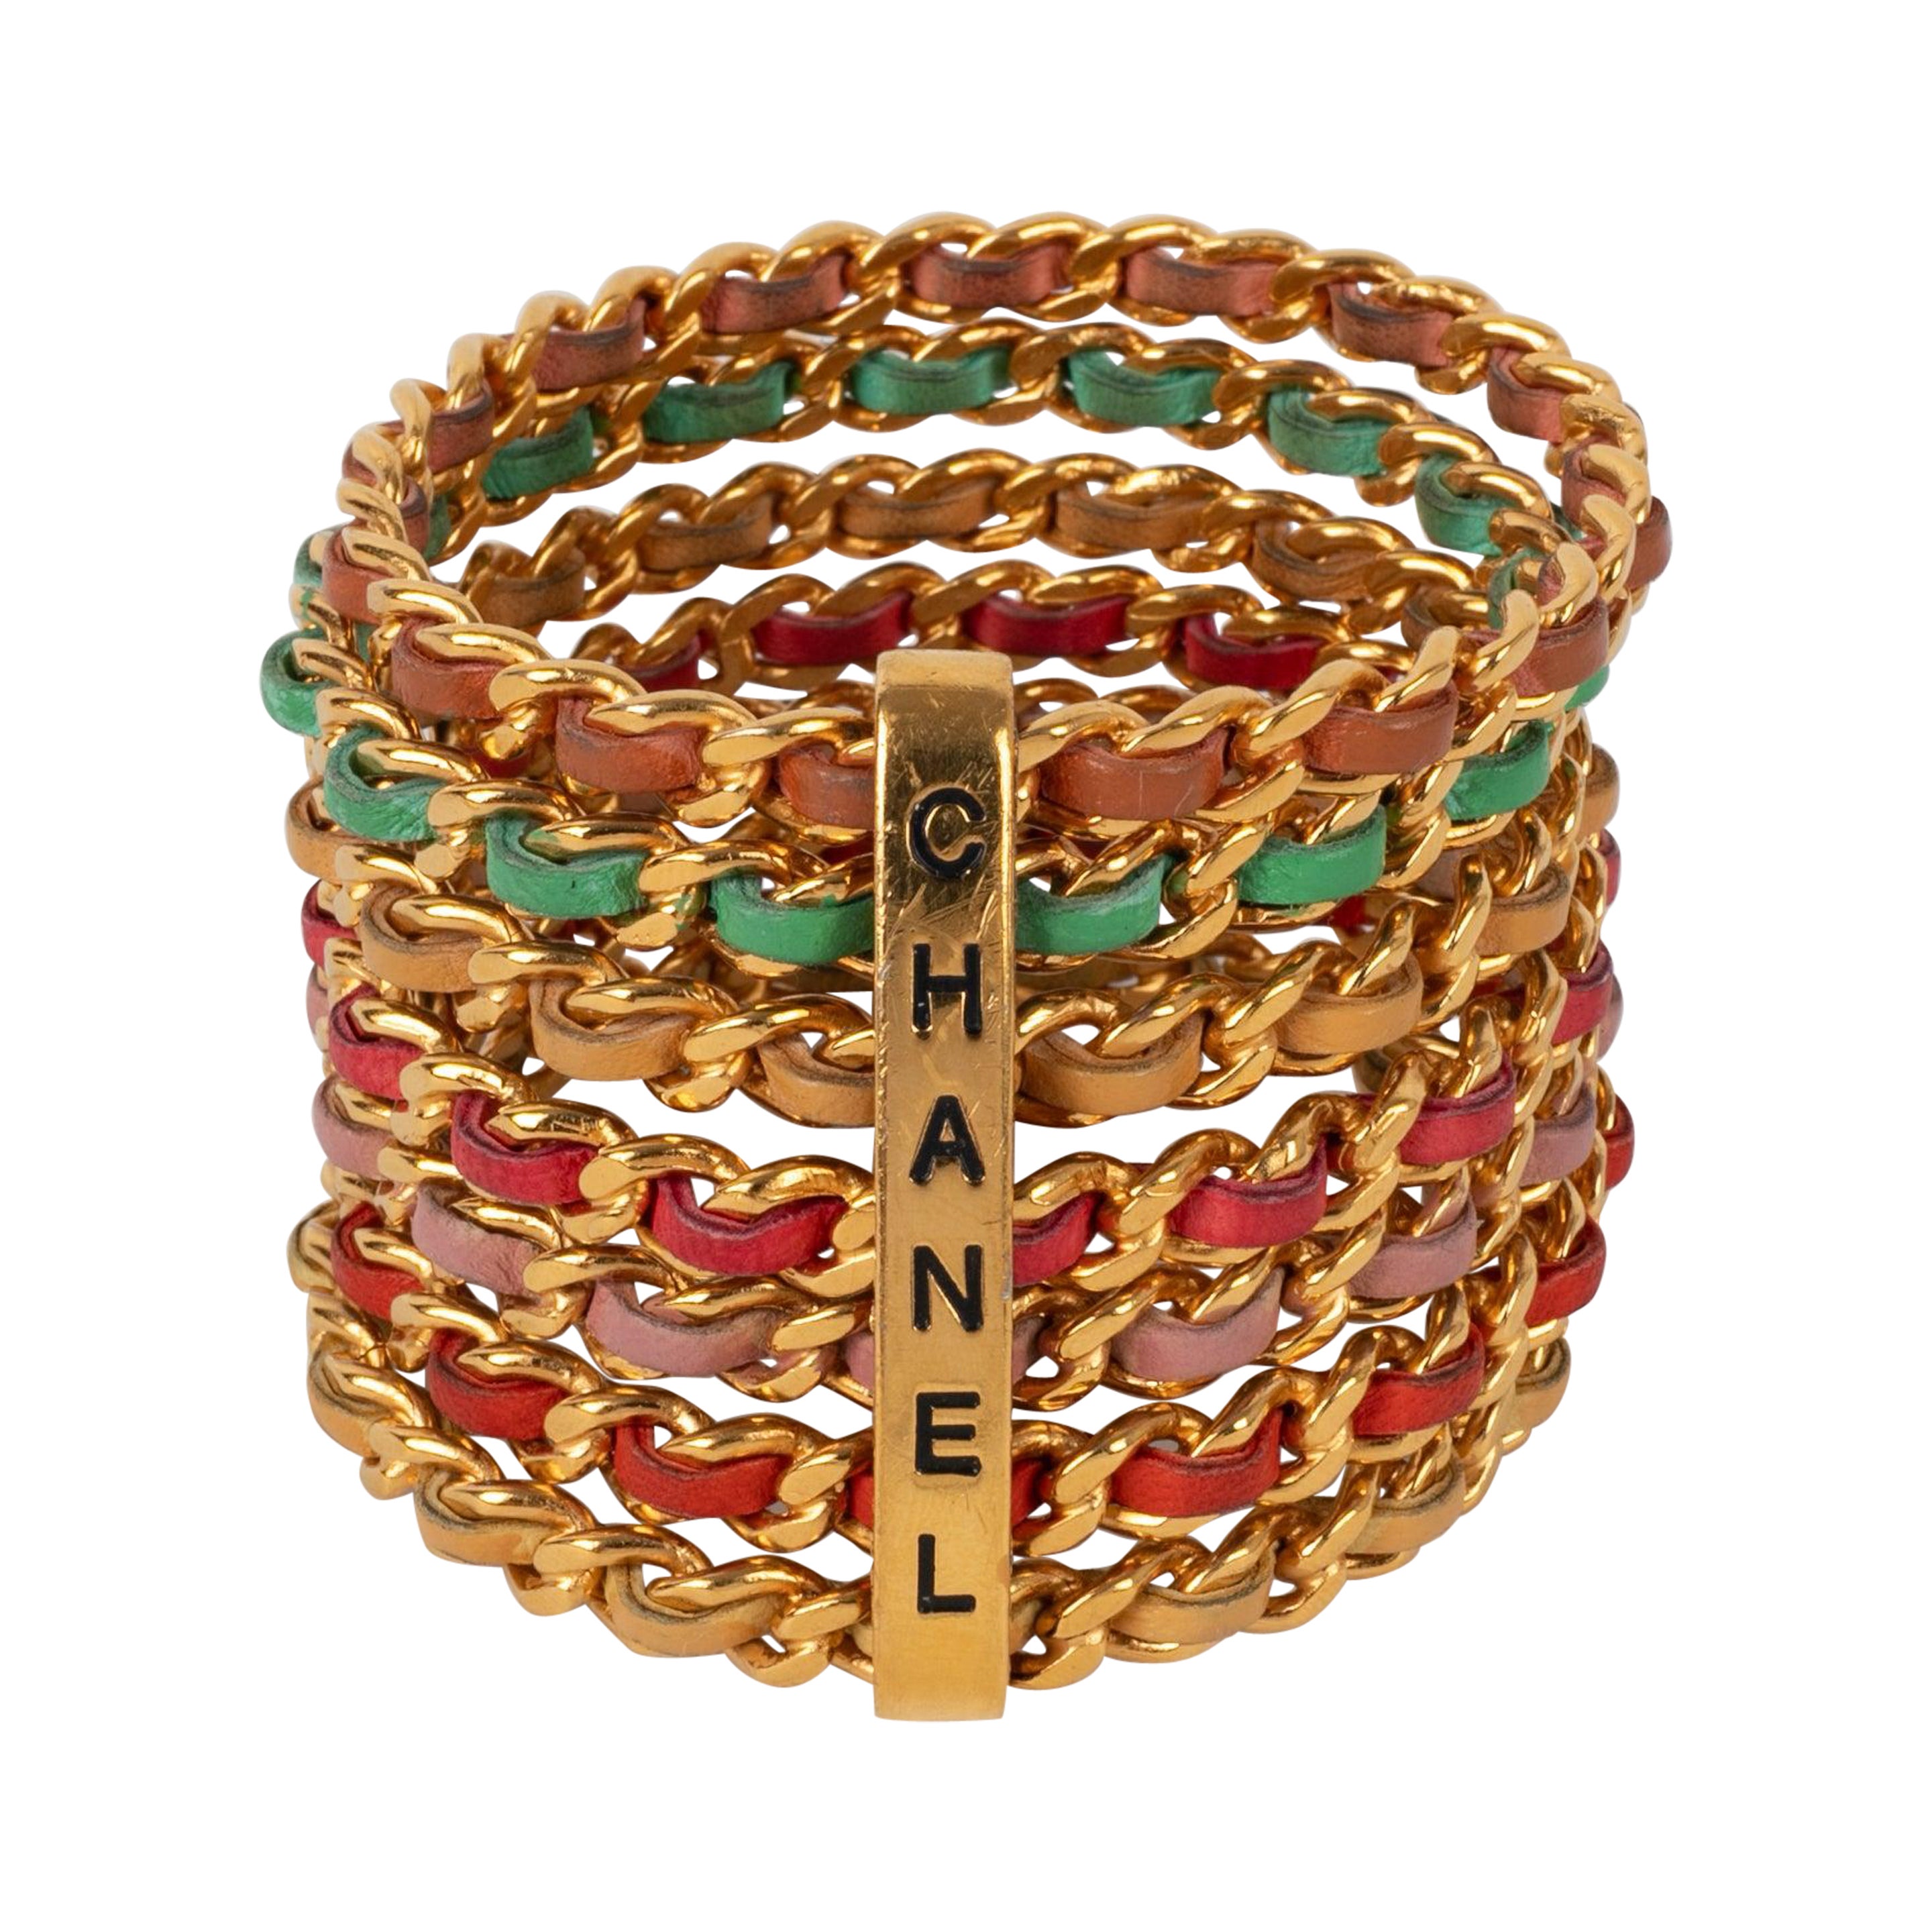 Chanel Cuff Bracelets Composed of Seven Golden Metal Bracelets, 1993